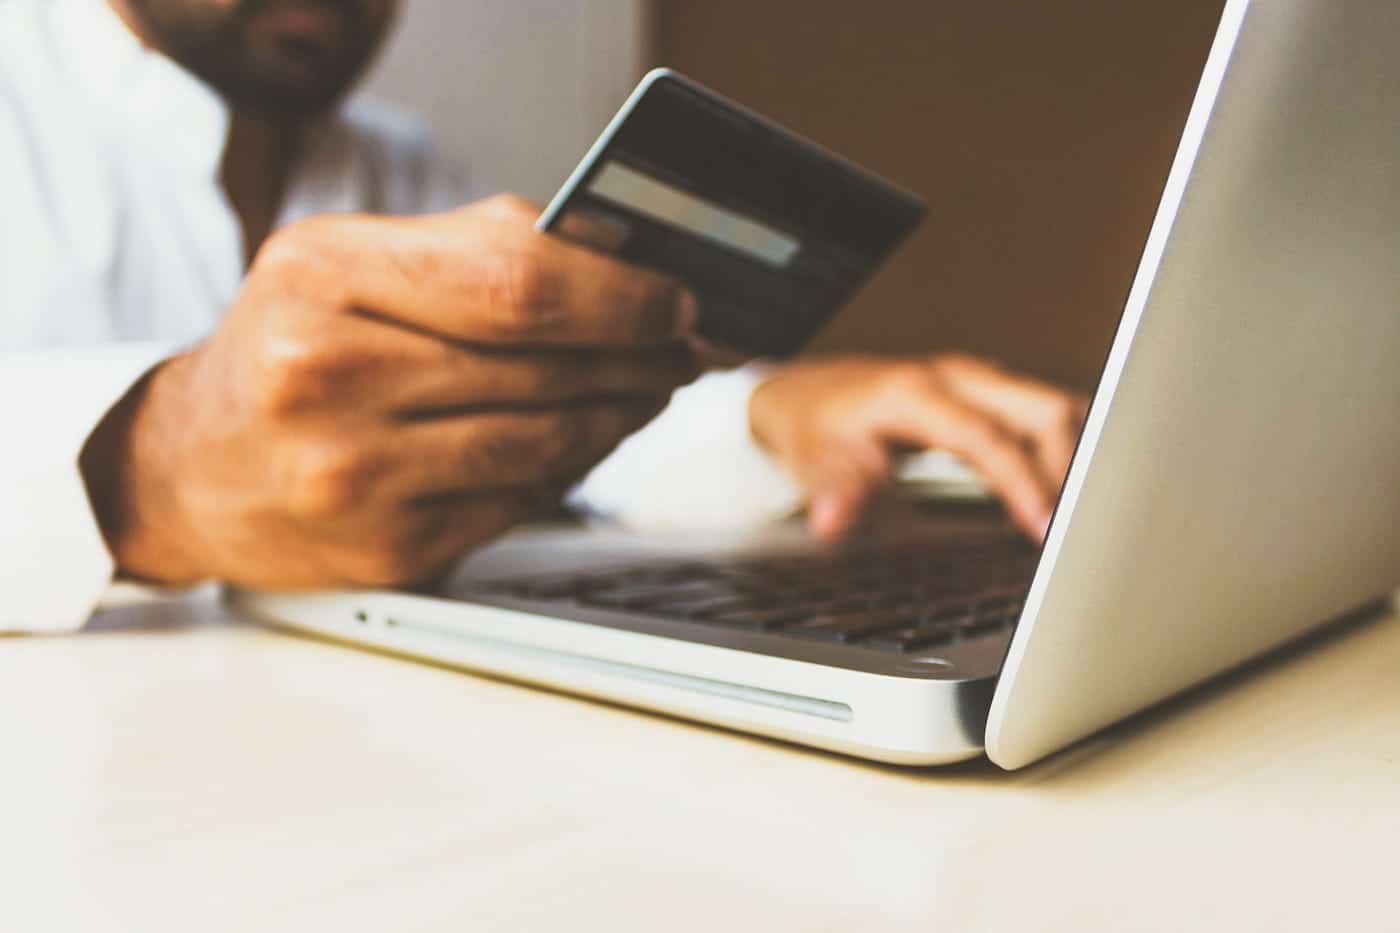 E-commerce Payment Gateways